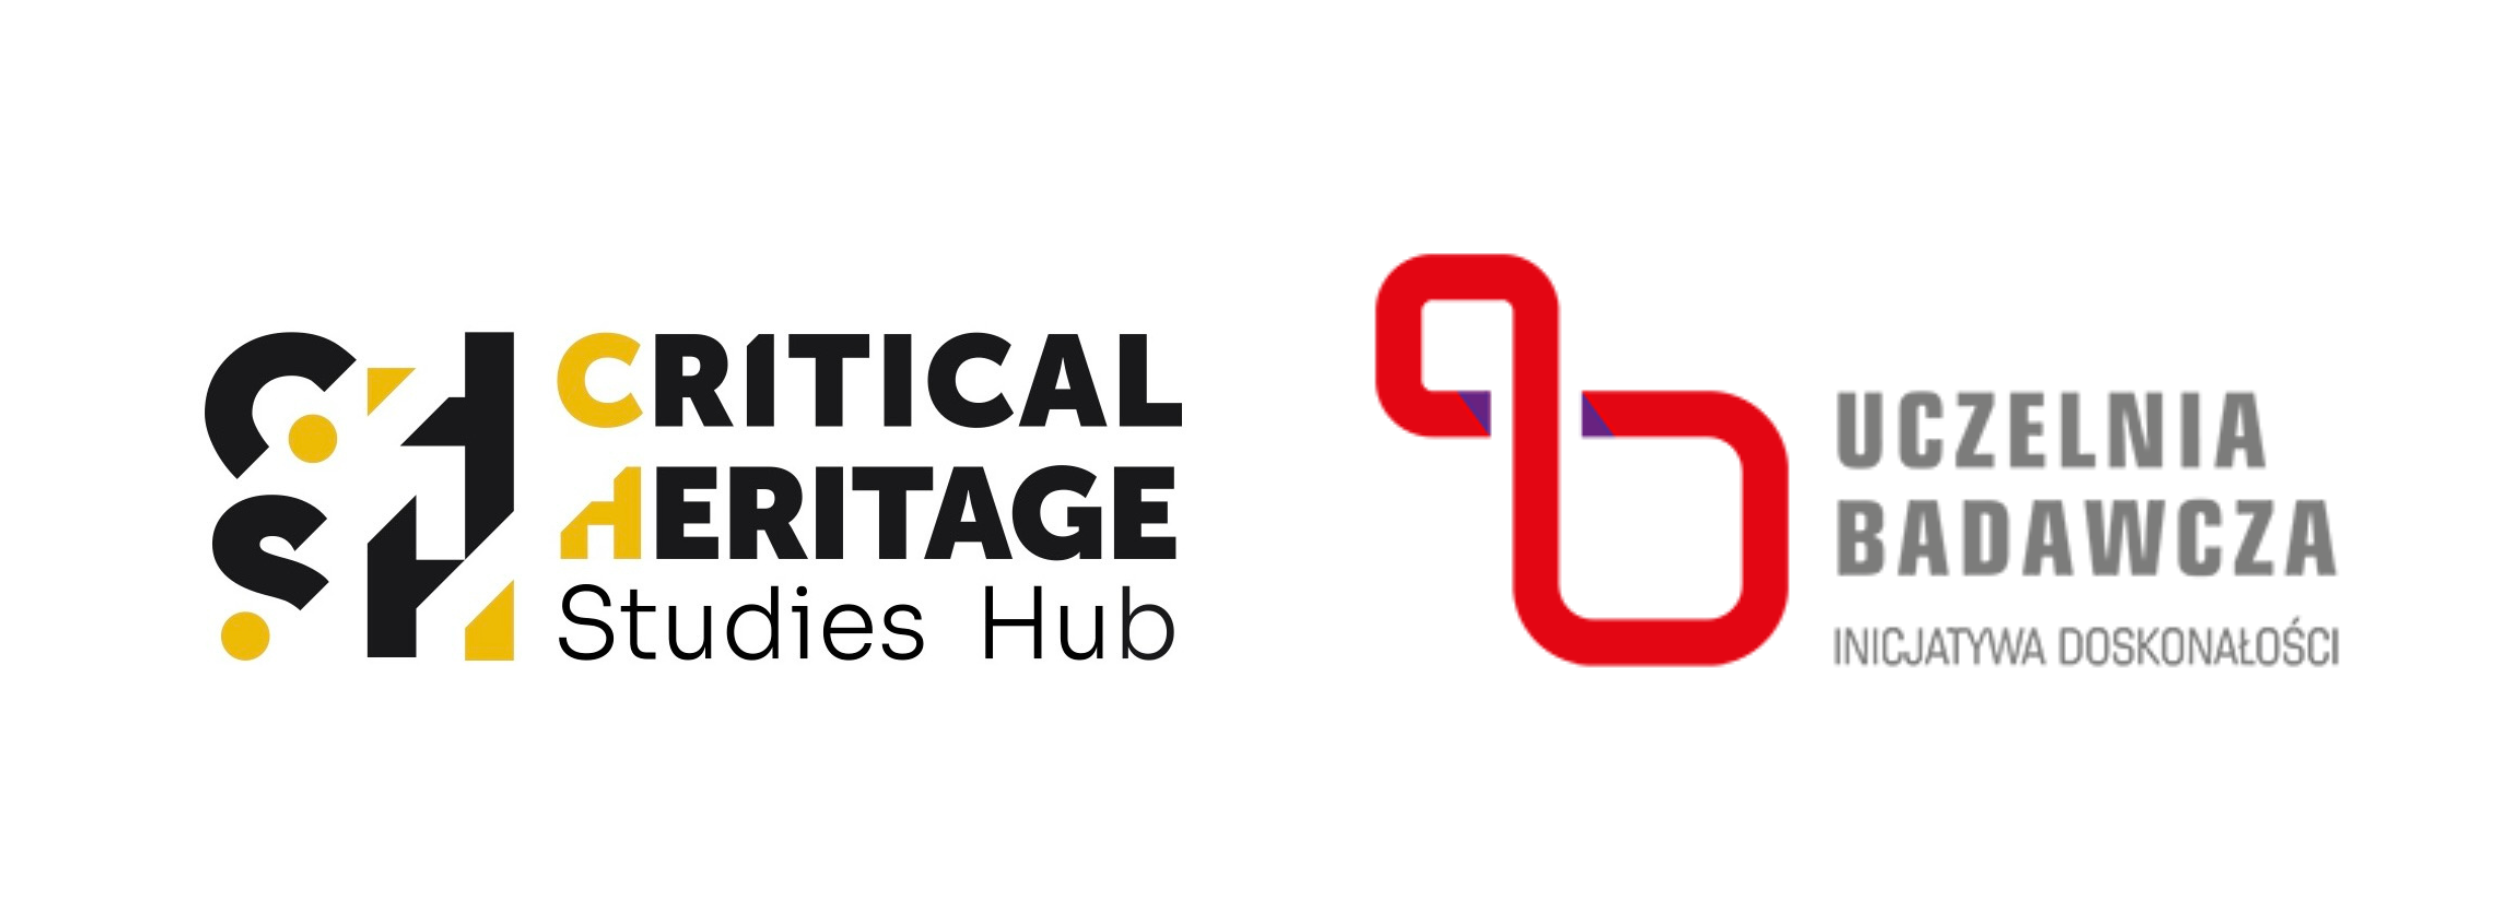 Critical Heritage Studies Hub Uczelnia Badawcza Inicjatywa Doskonałości